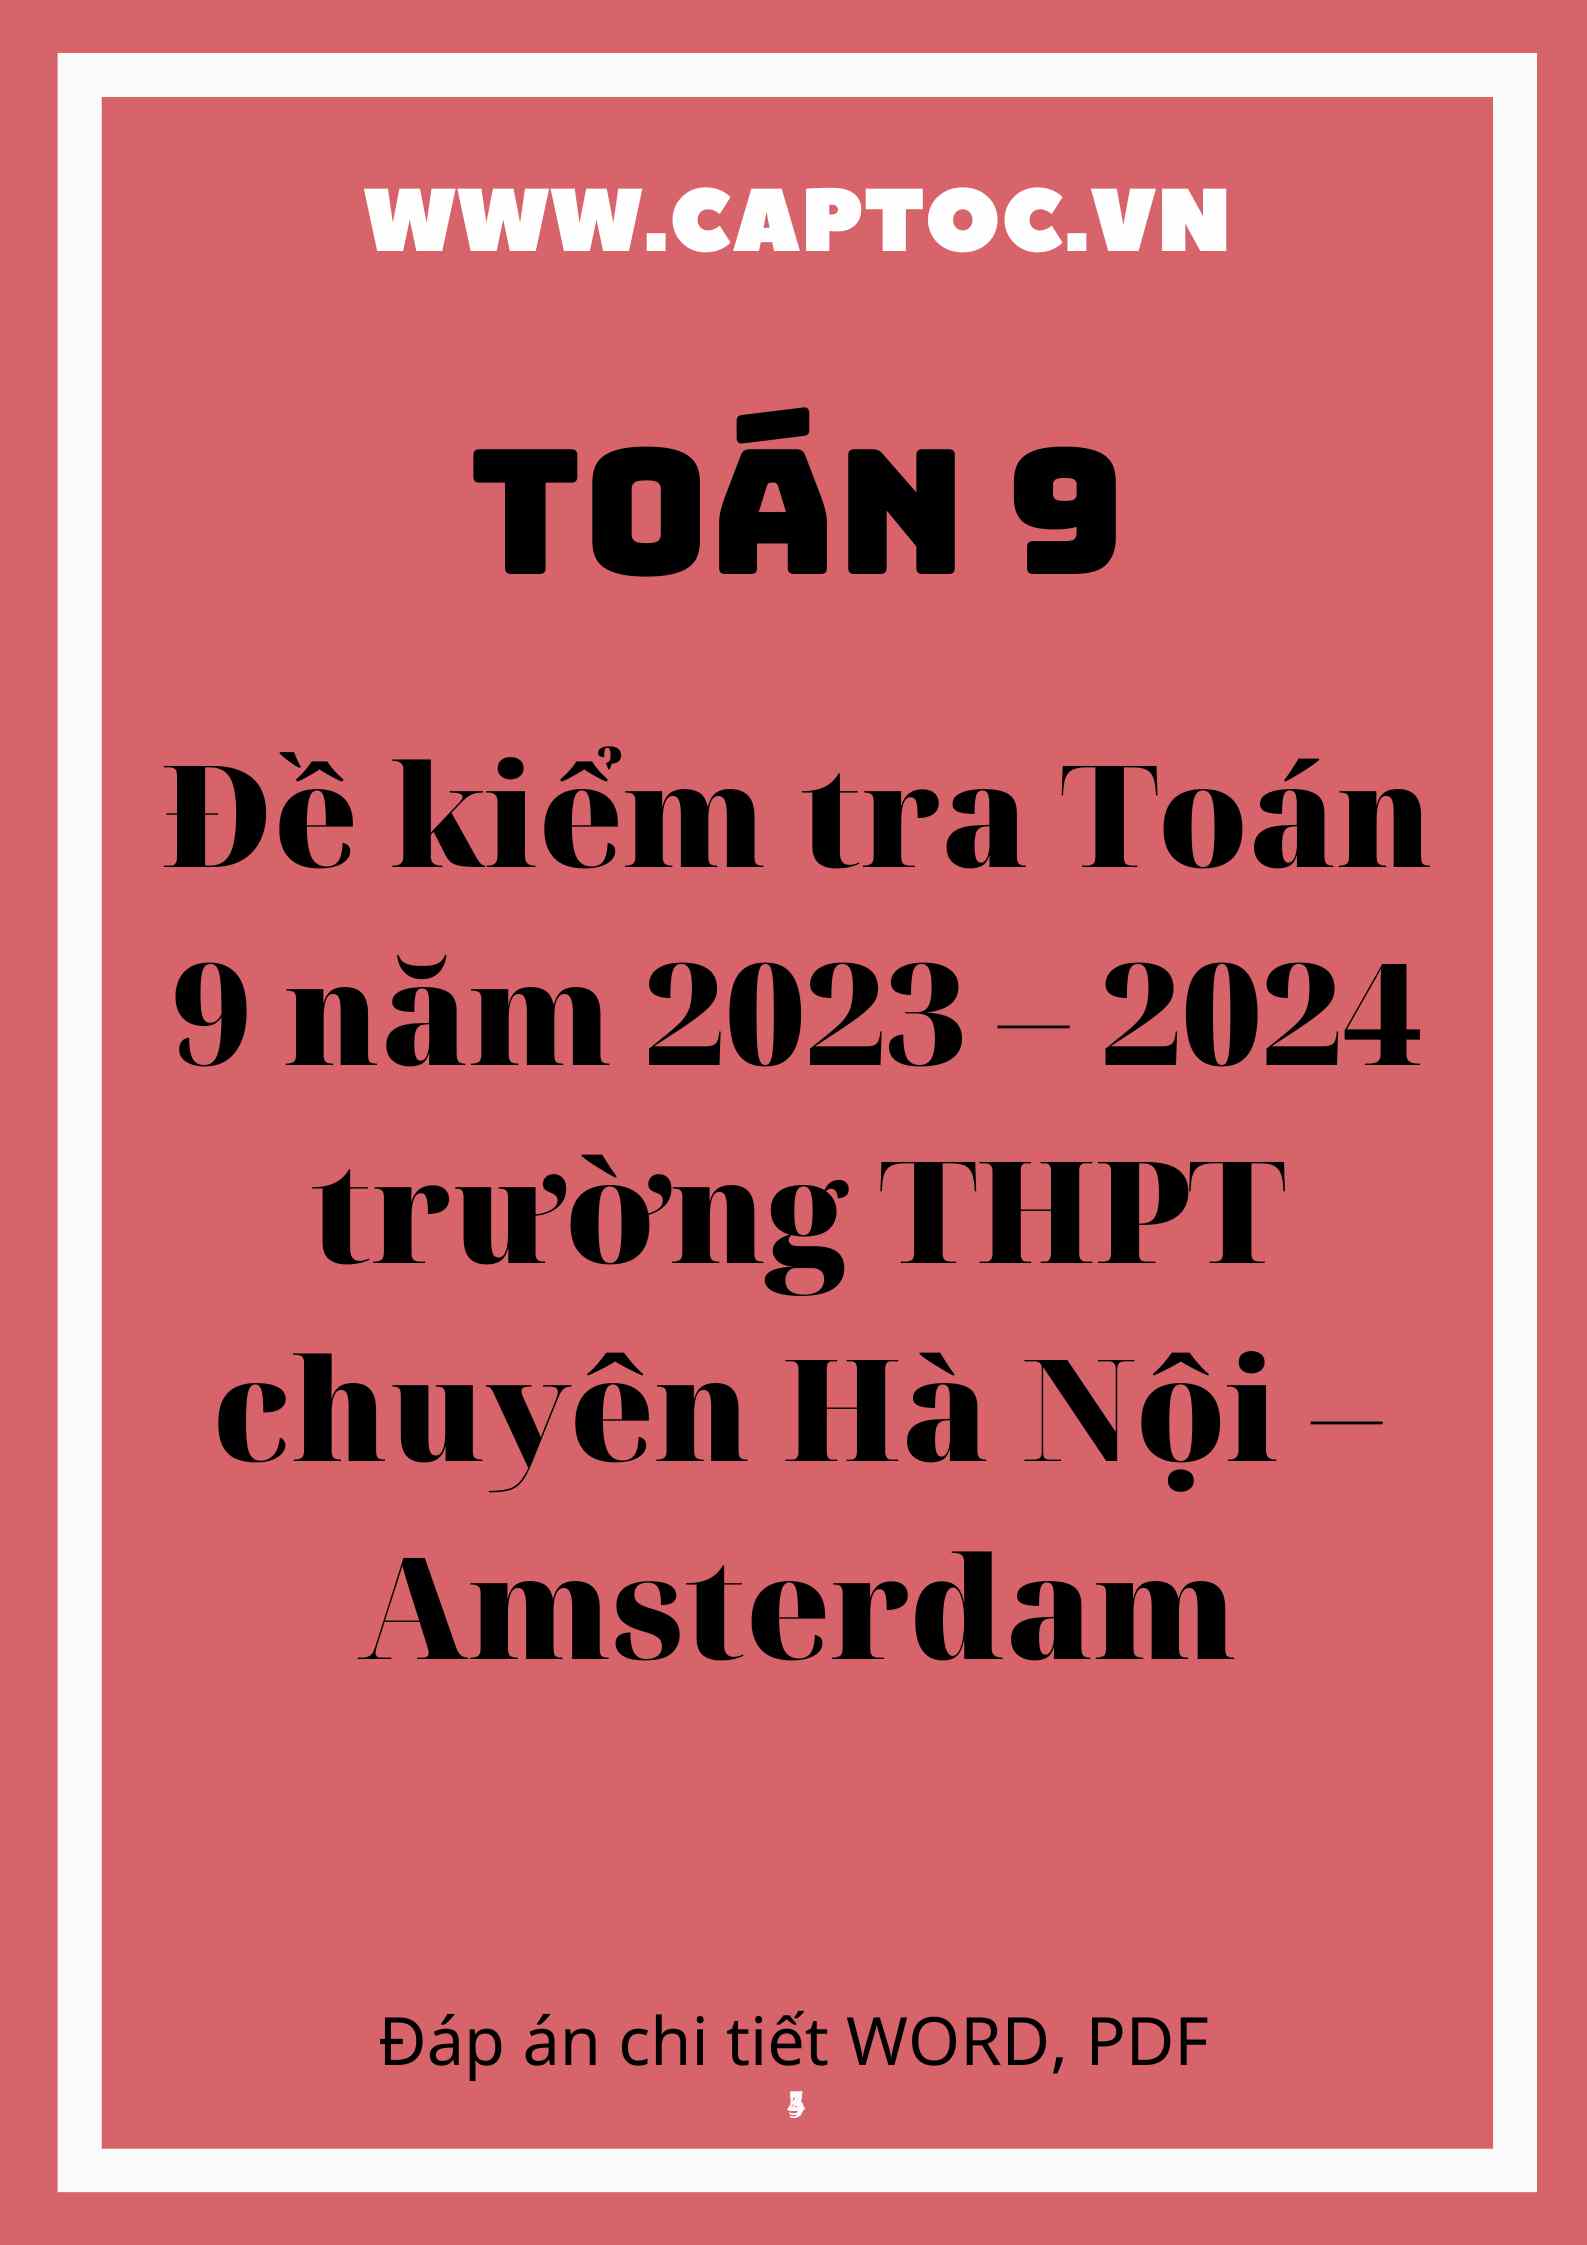 Đề kiểm tra Toán 9 năm 2023 – 2024 trường THPT chuyên Hà Nội – Amsterdam